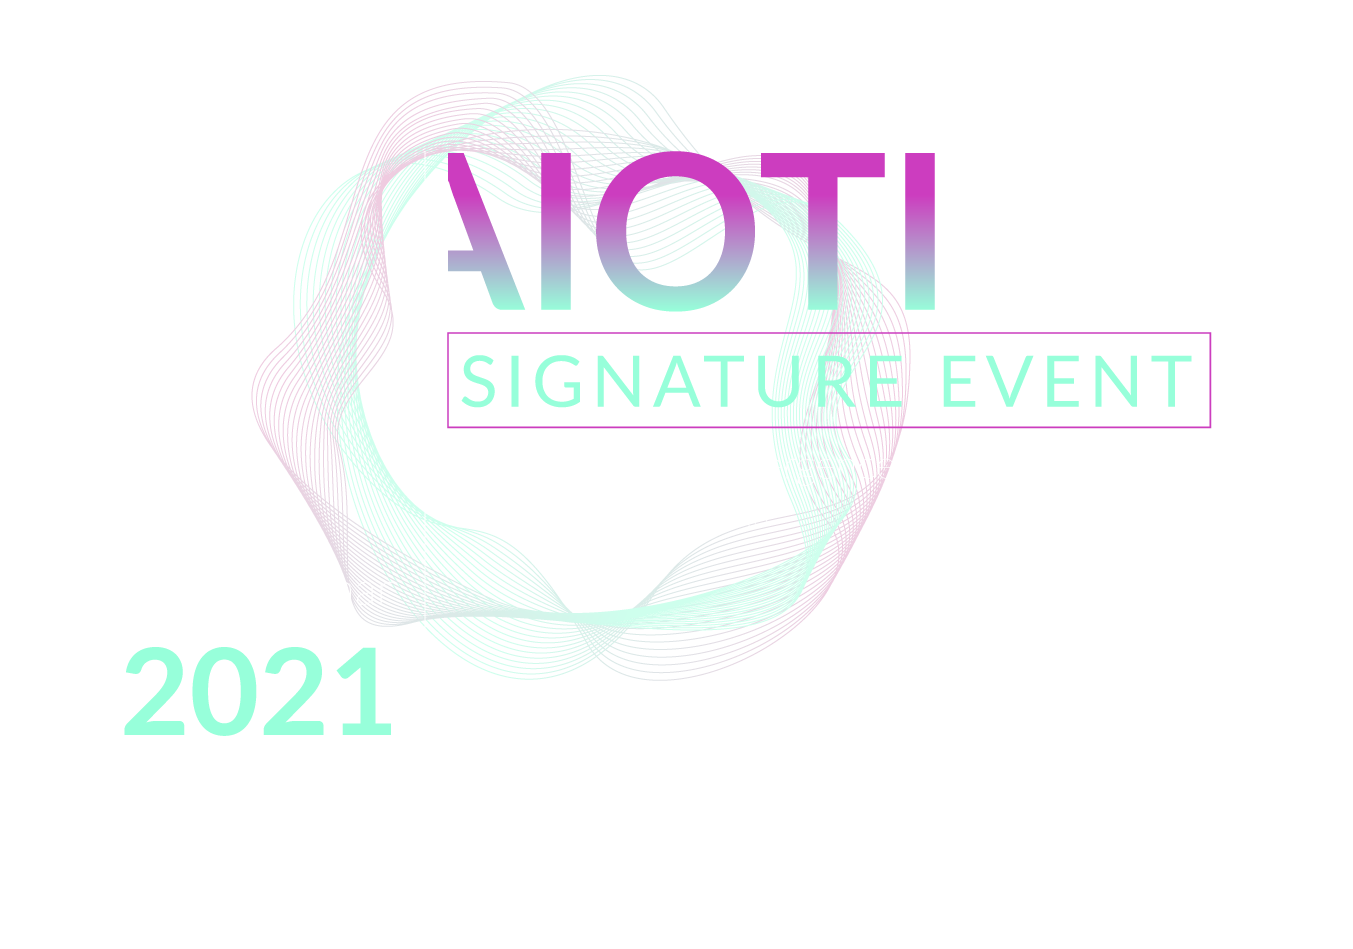 AIOTI_Signature_Event__2021_Visual_12-10-21